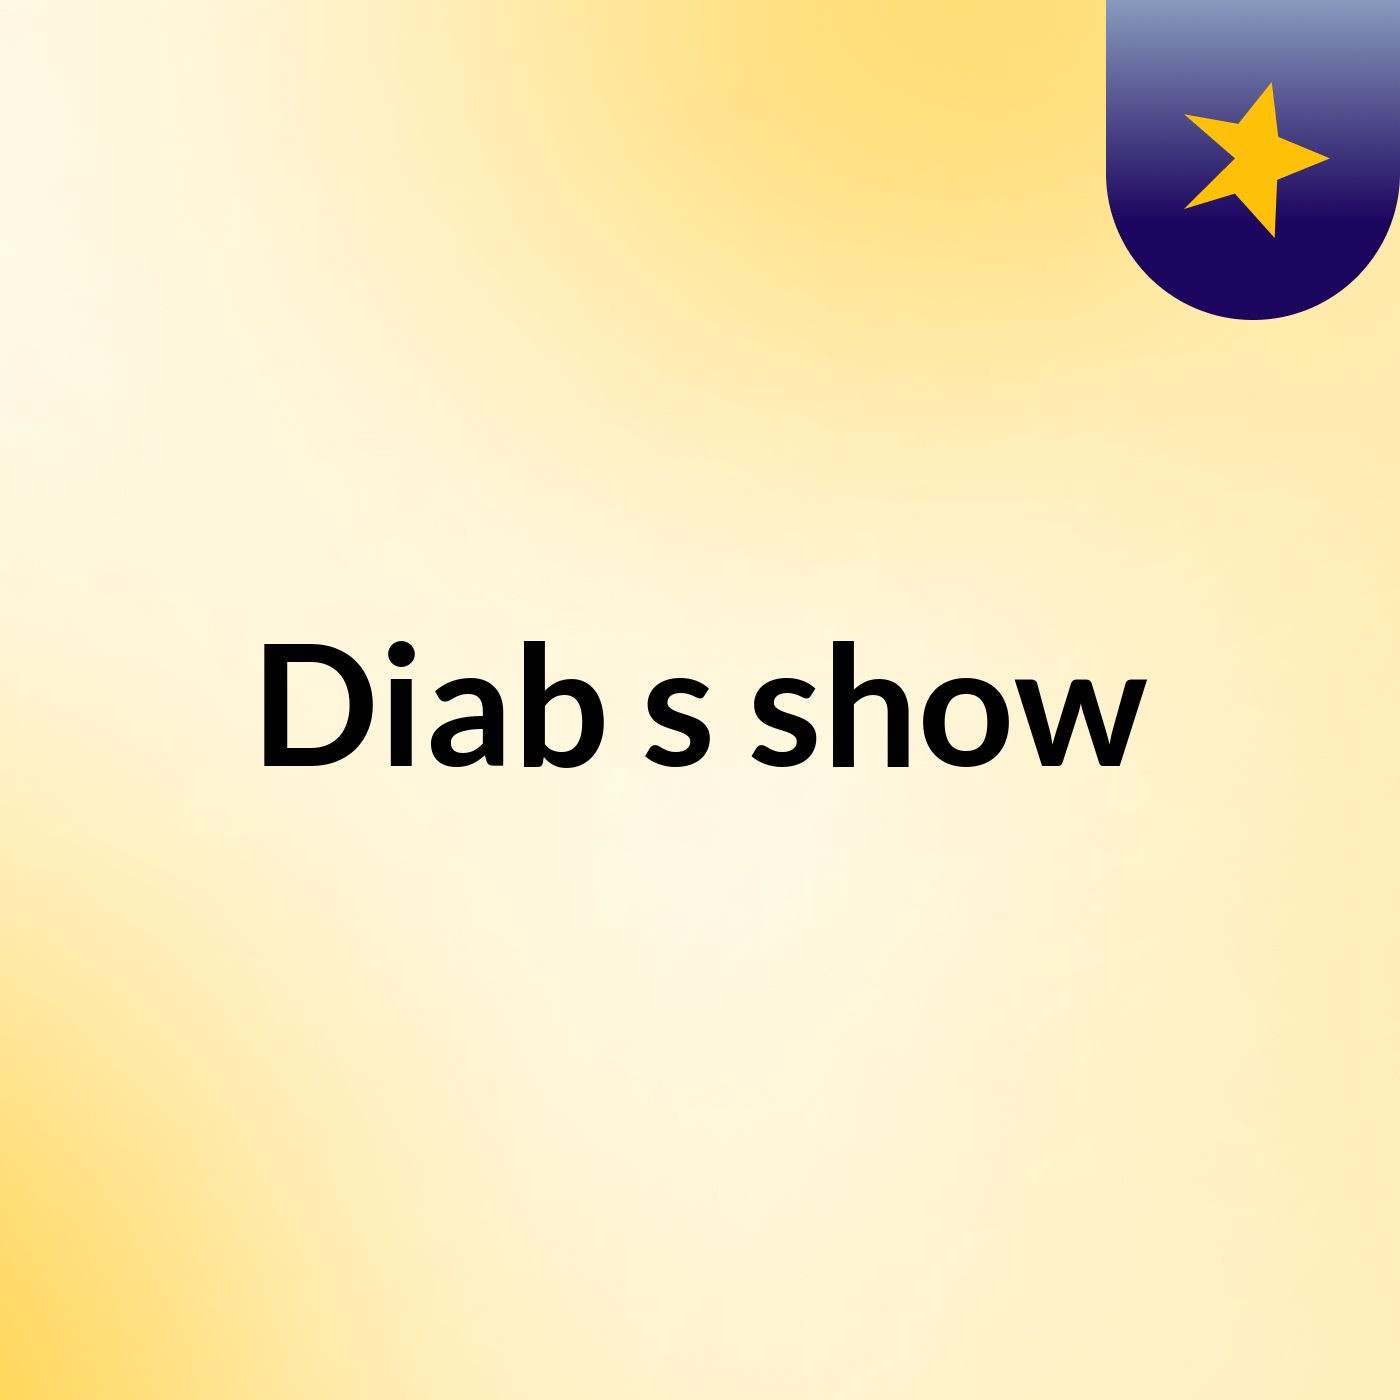 Diab's show